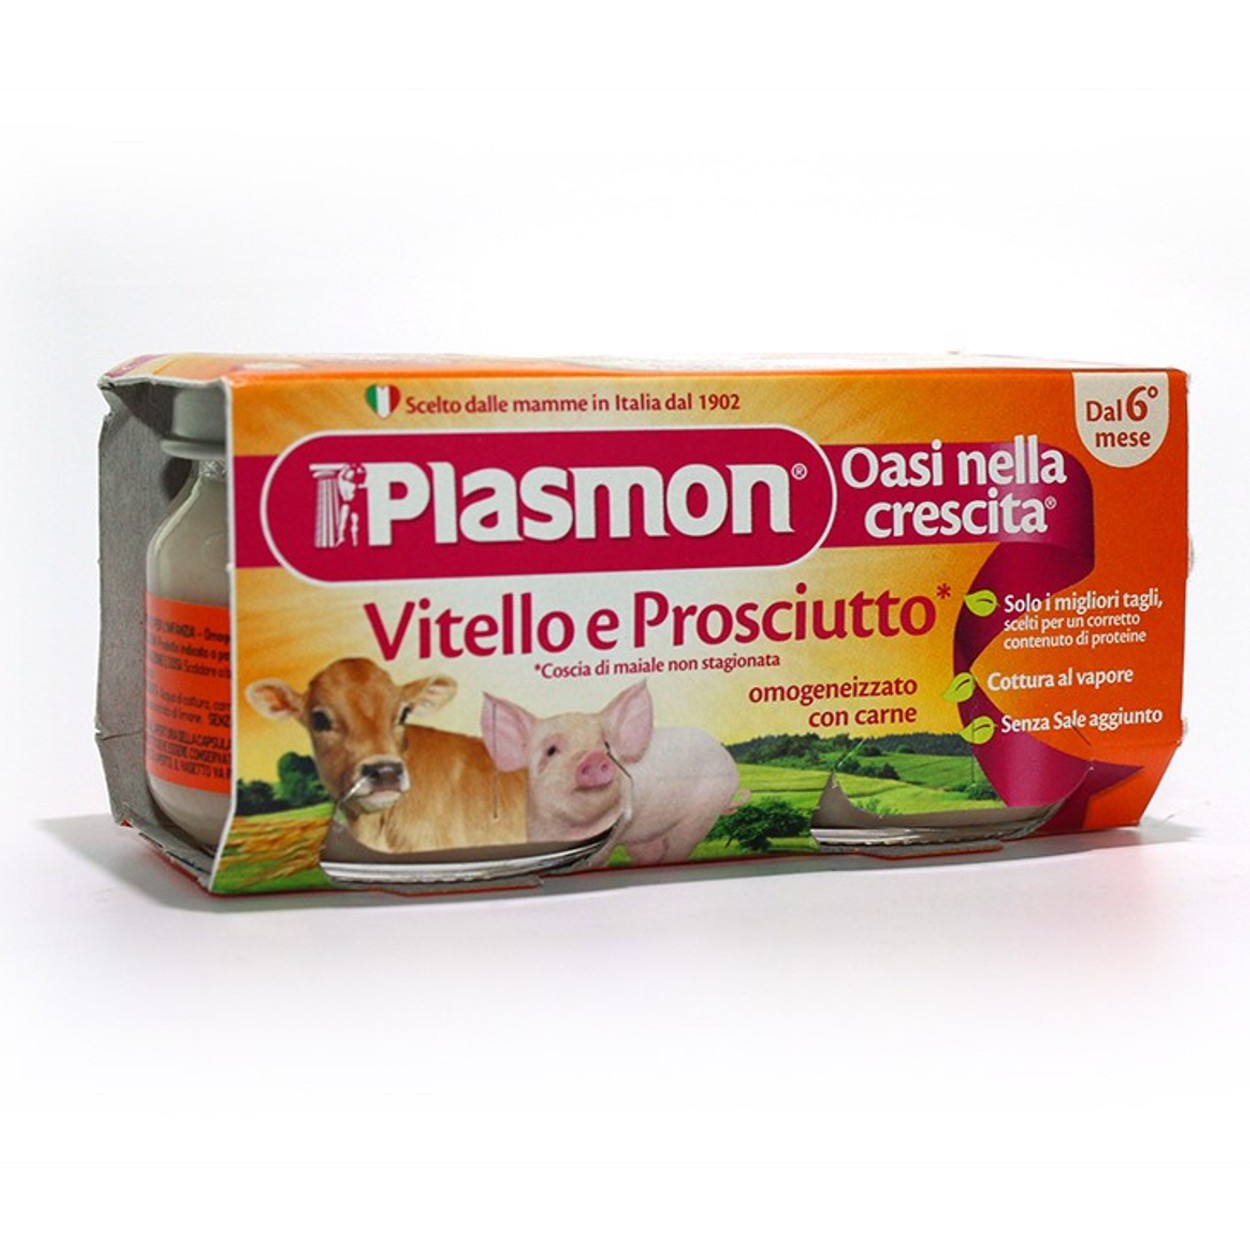 Plasmon Omogeneizzato al Prosciutto (2 x 80g) a € 1,70 (oggi)